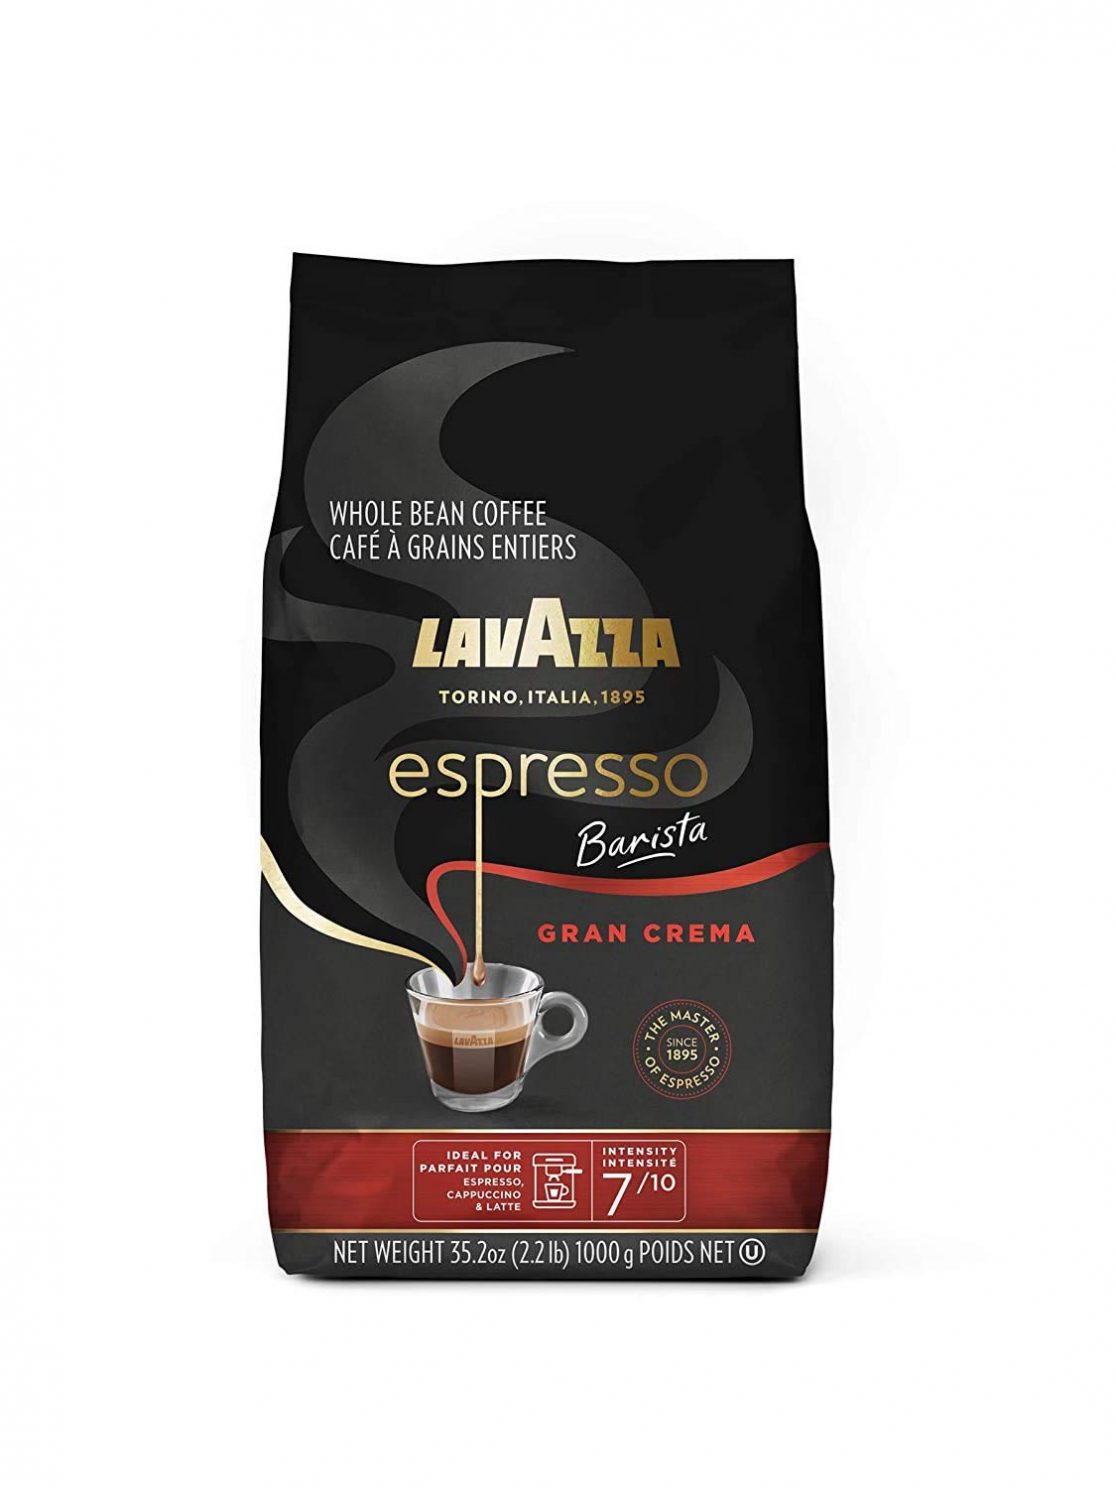 Lavazza Espresso Barista Gran Crema Whole Bean Coffee Blend